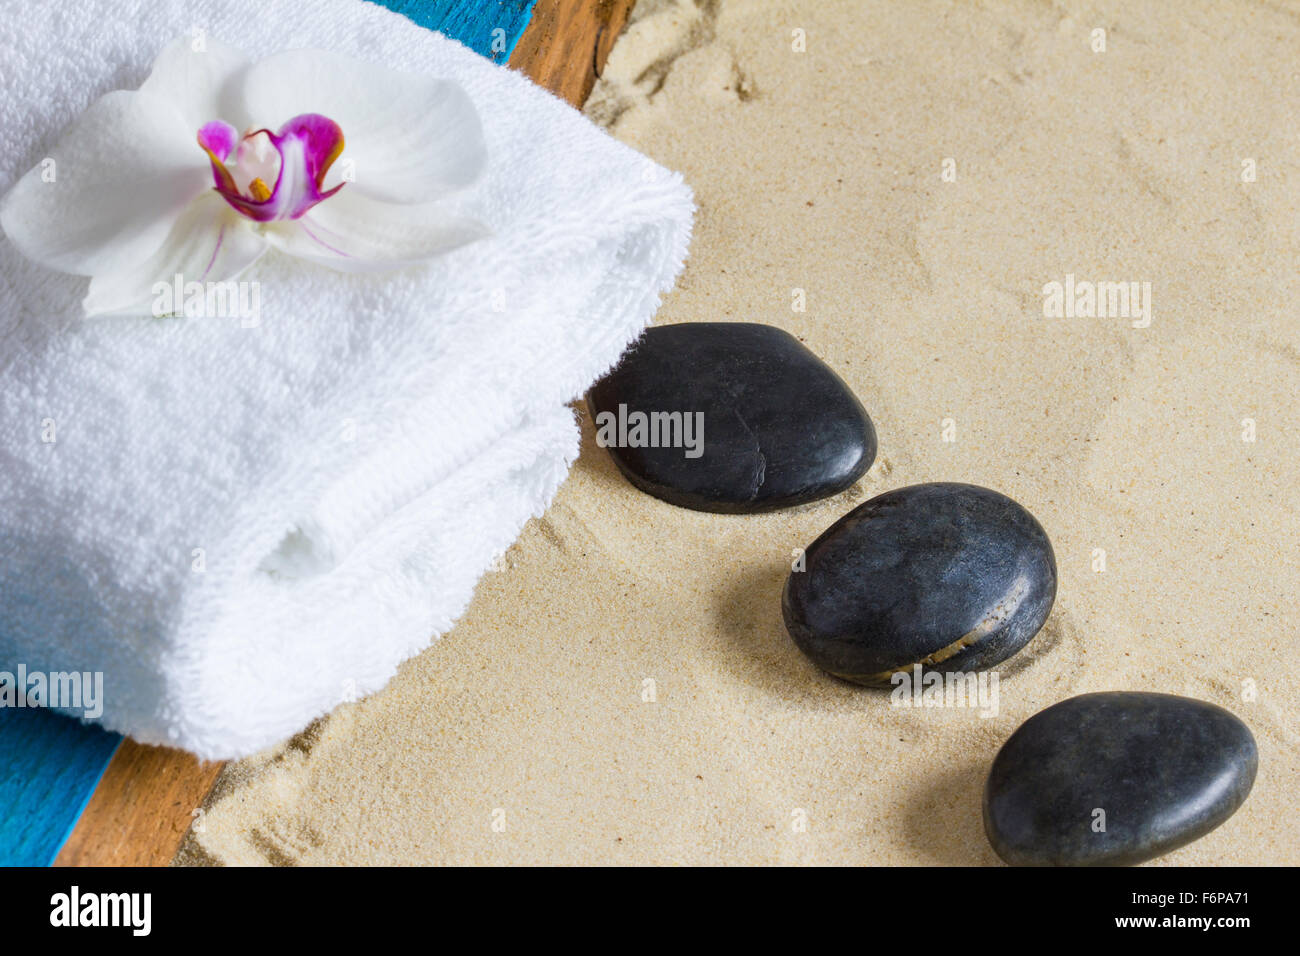 Schwarzen Sie Basaltsteinen, weißes Handtuch, Orchidee Blume, Aqua lackiertem Holz auf Sand Hintergrund.  Nahaufnahme, Exemplar, selektiven Fokus Stockfoto